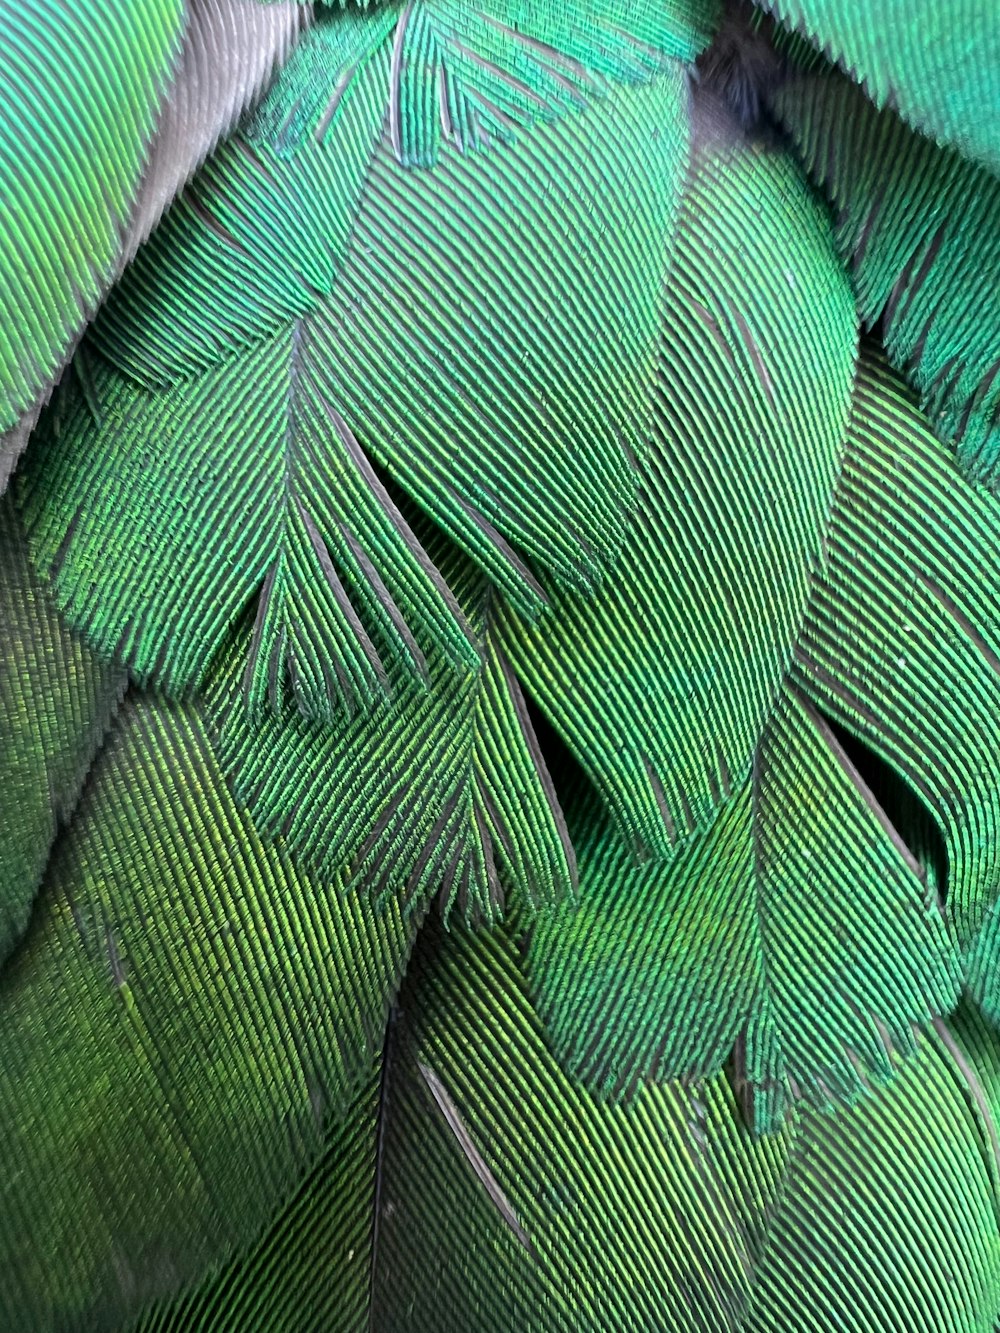 緑の鳥の羽のクローズアップ